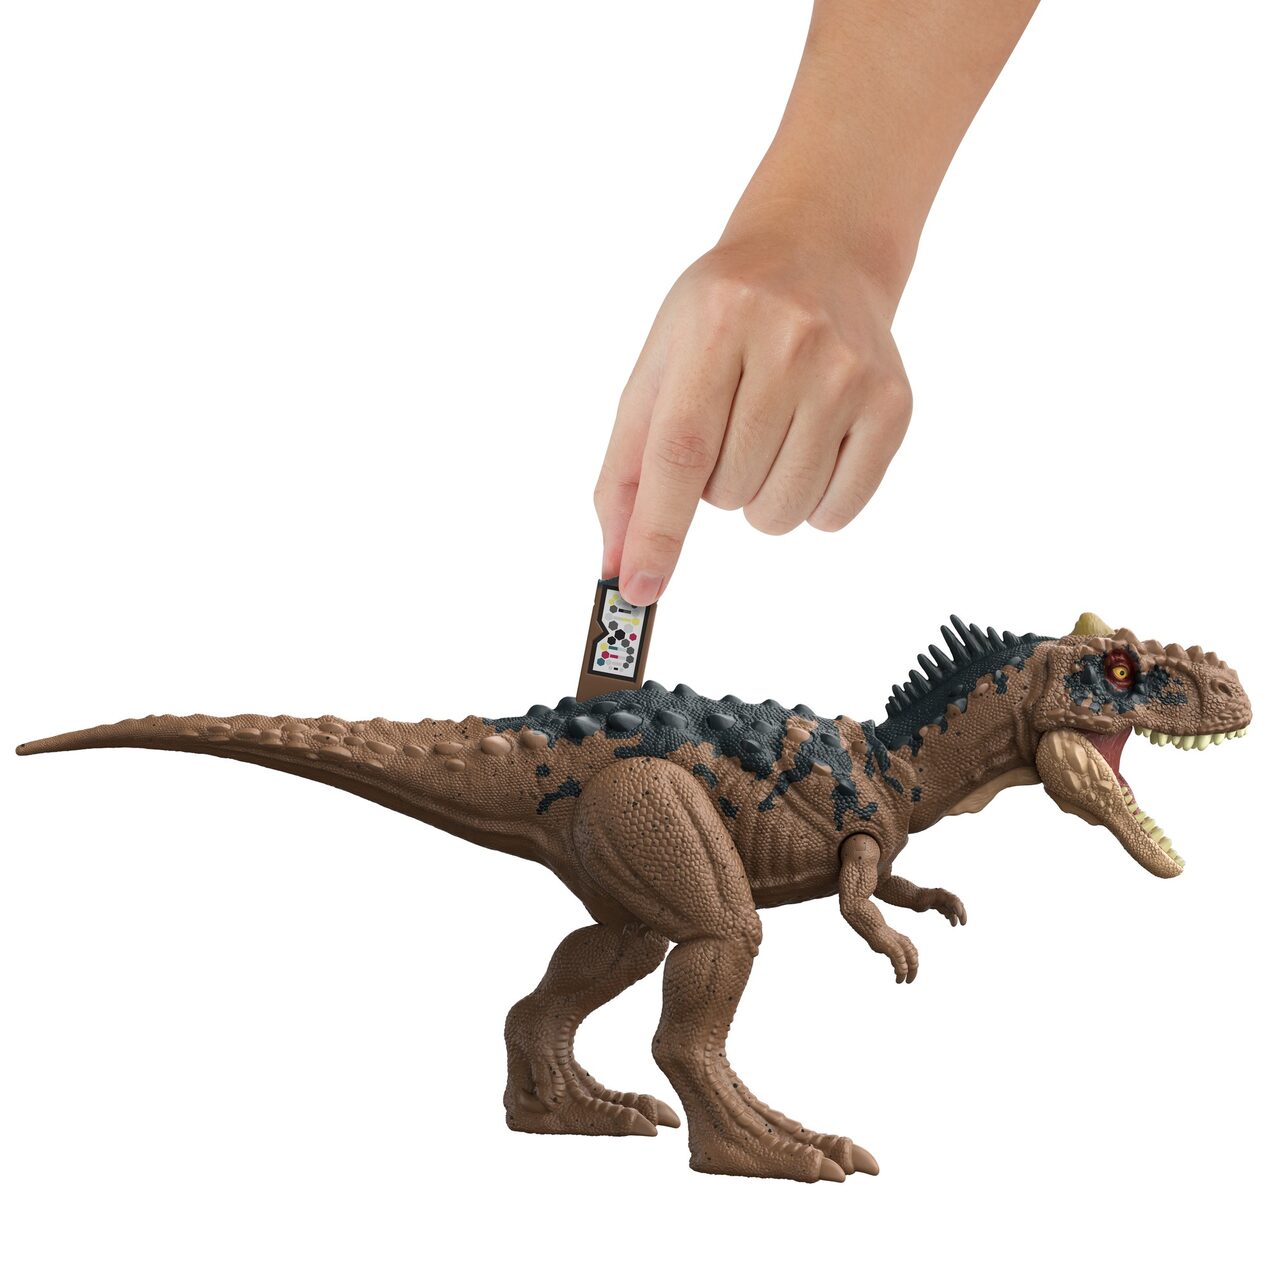 Mattel HDX35 - Jurassic World Roar Strikers Rajasaurus Dinosaurier Spielzeug